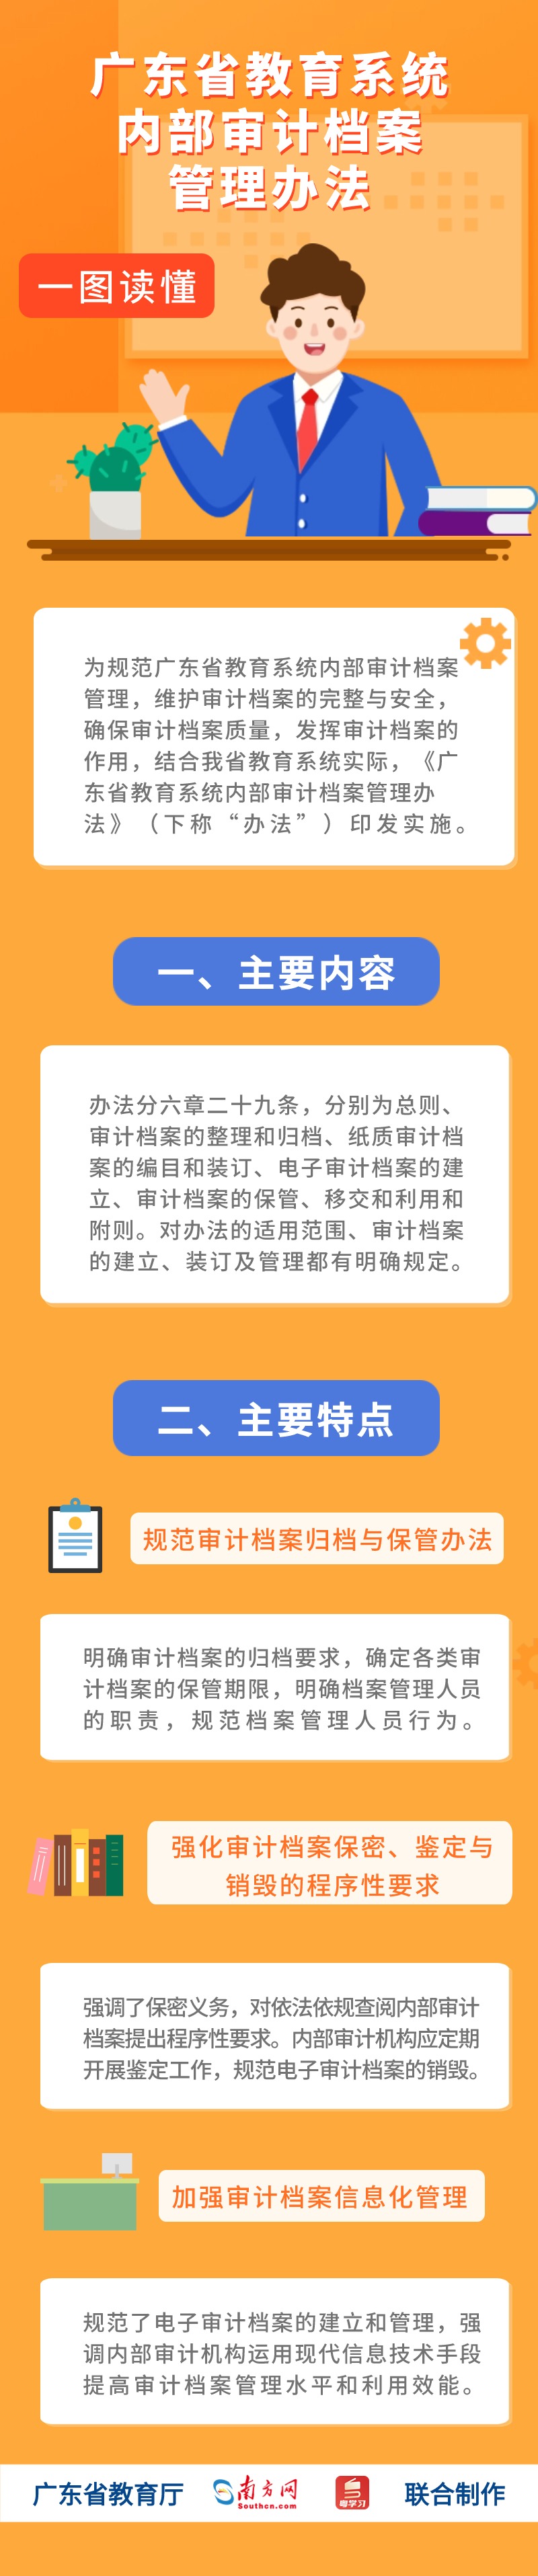 广东省教育系统内部审计档案管理办法.jpg